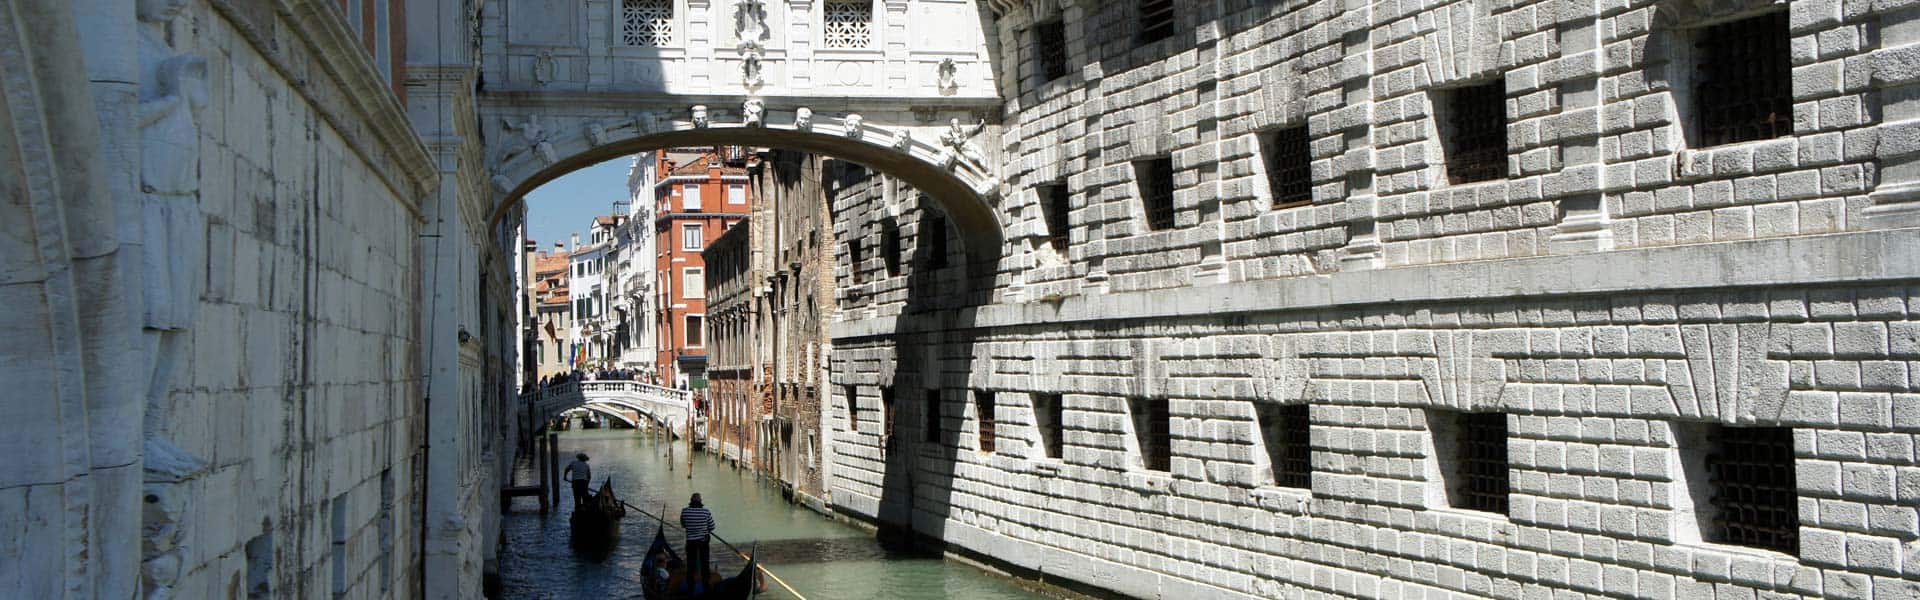 Lassen Sie sich von einem Stück italienischer Geschichte gefangen nehmen: die Seufzerbrücke in Venedig, IItalien